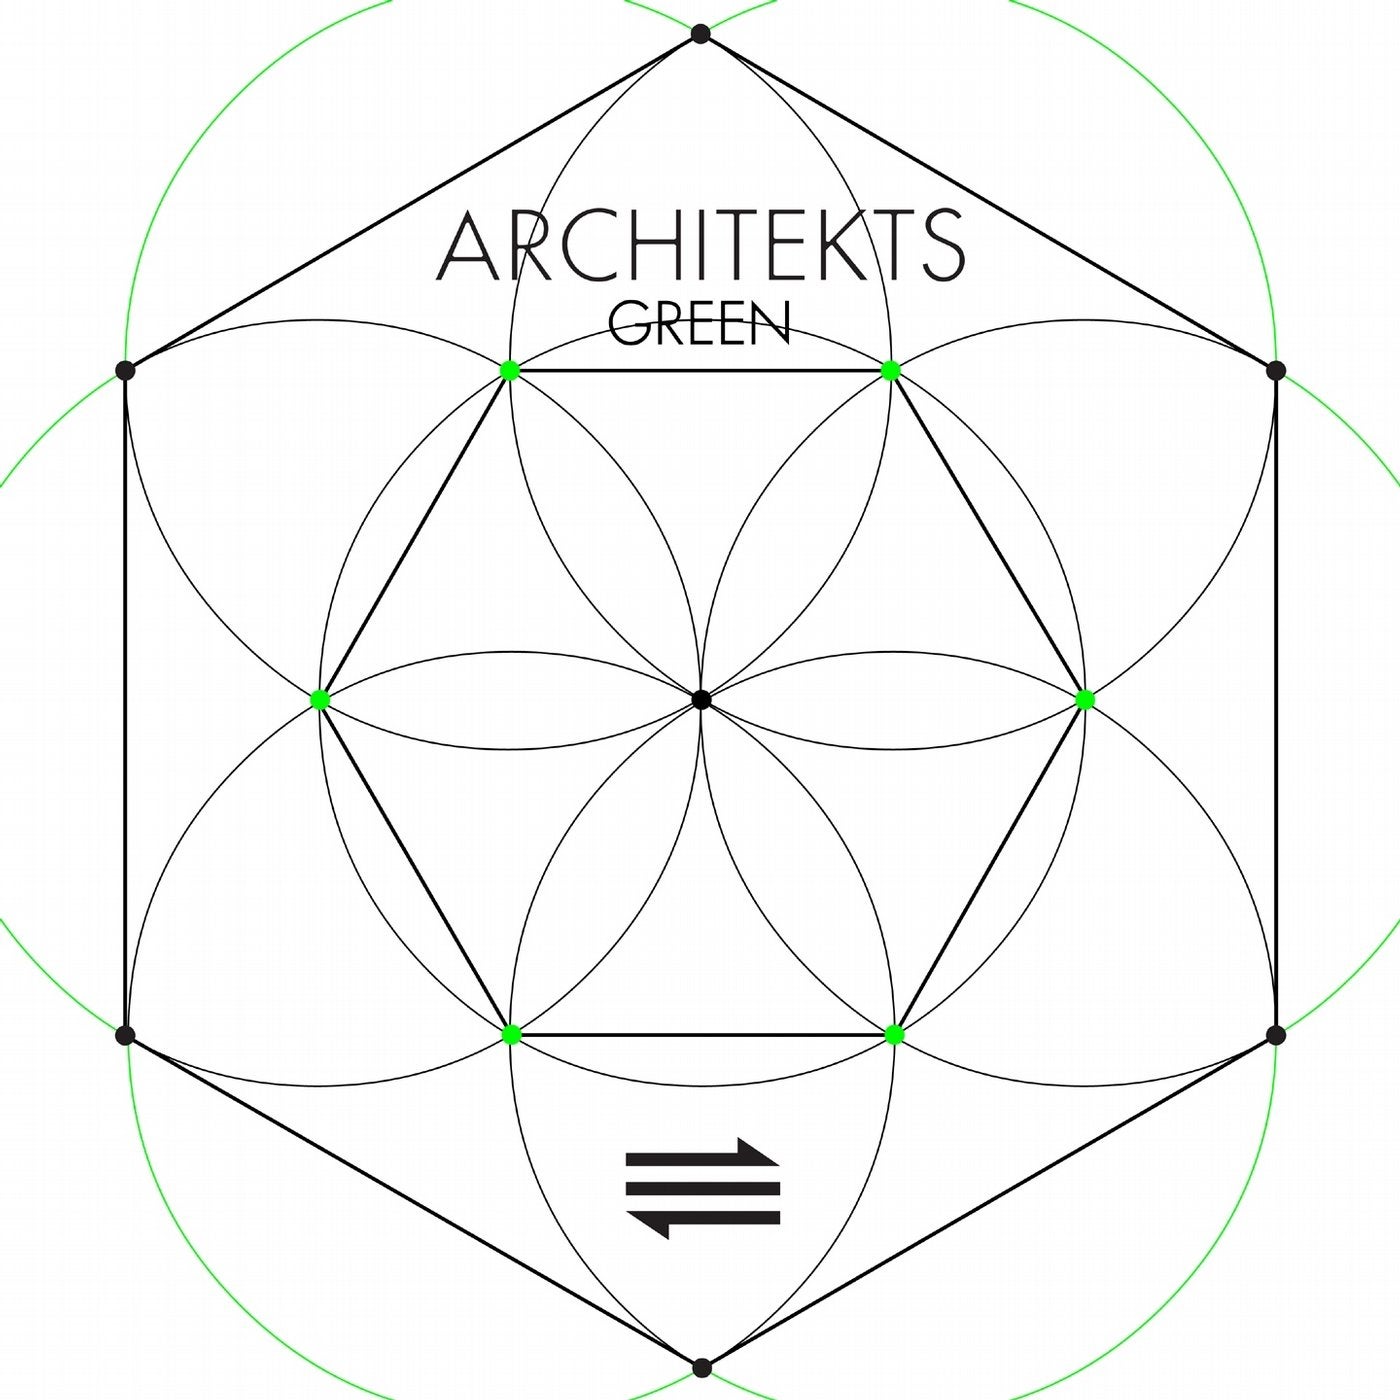 Architekts, Vol. 2 (Green)